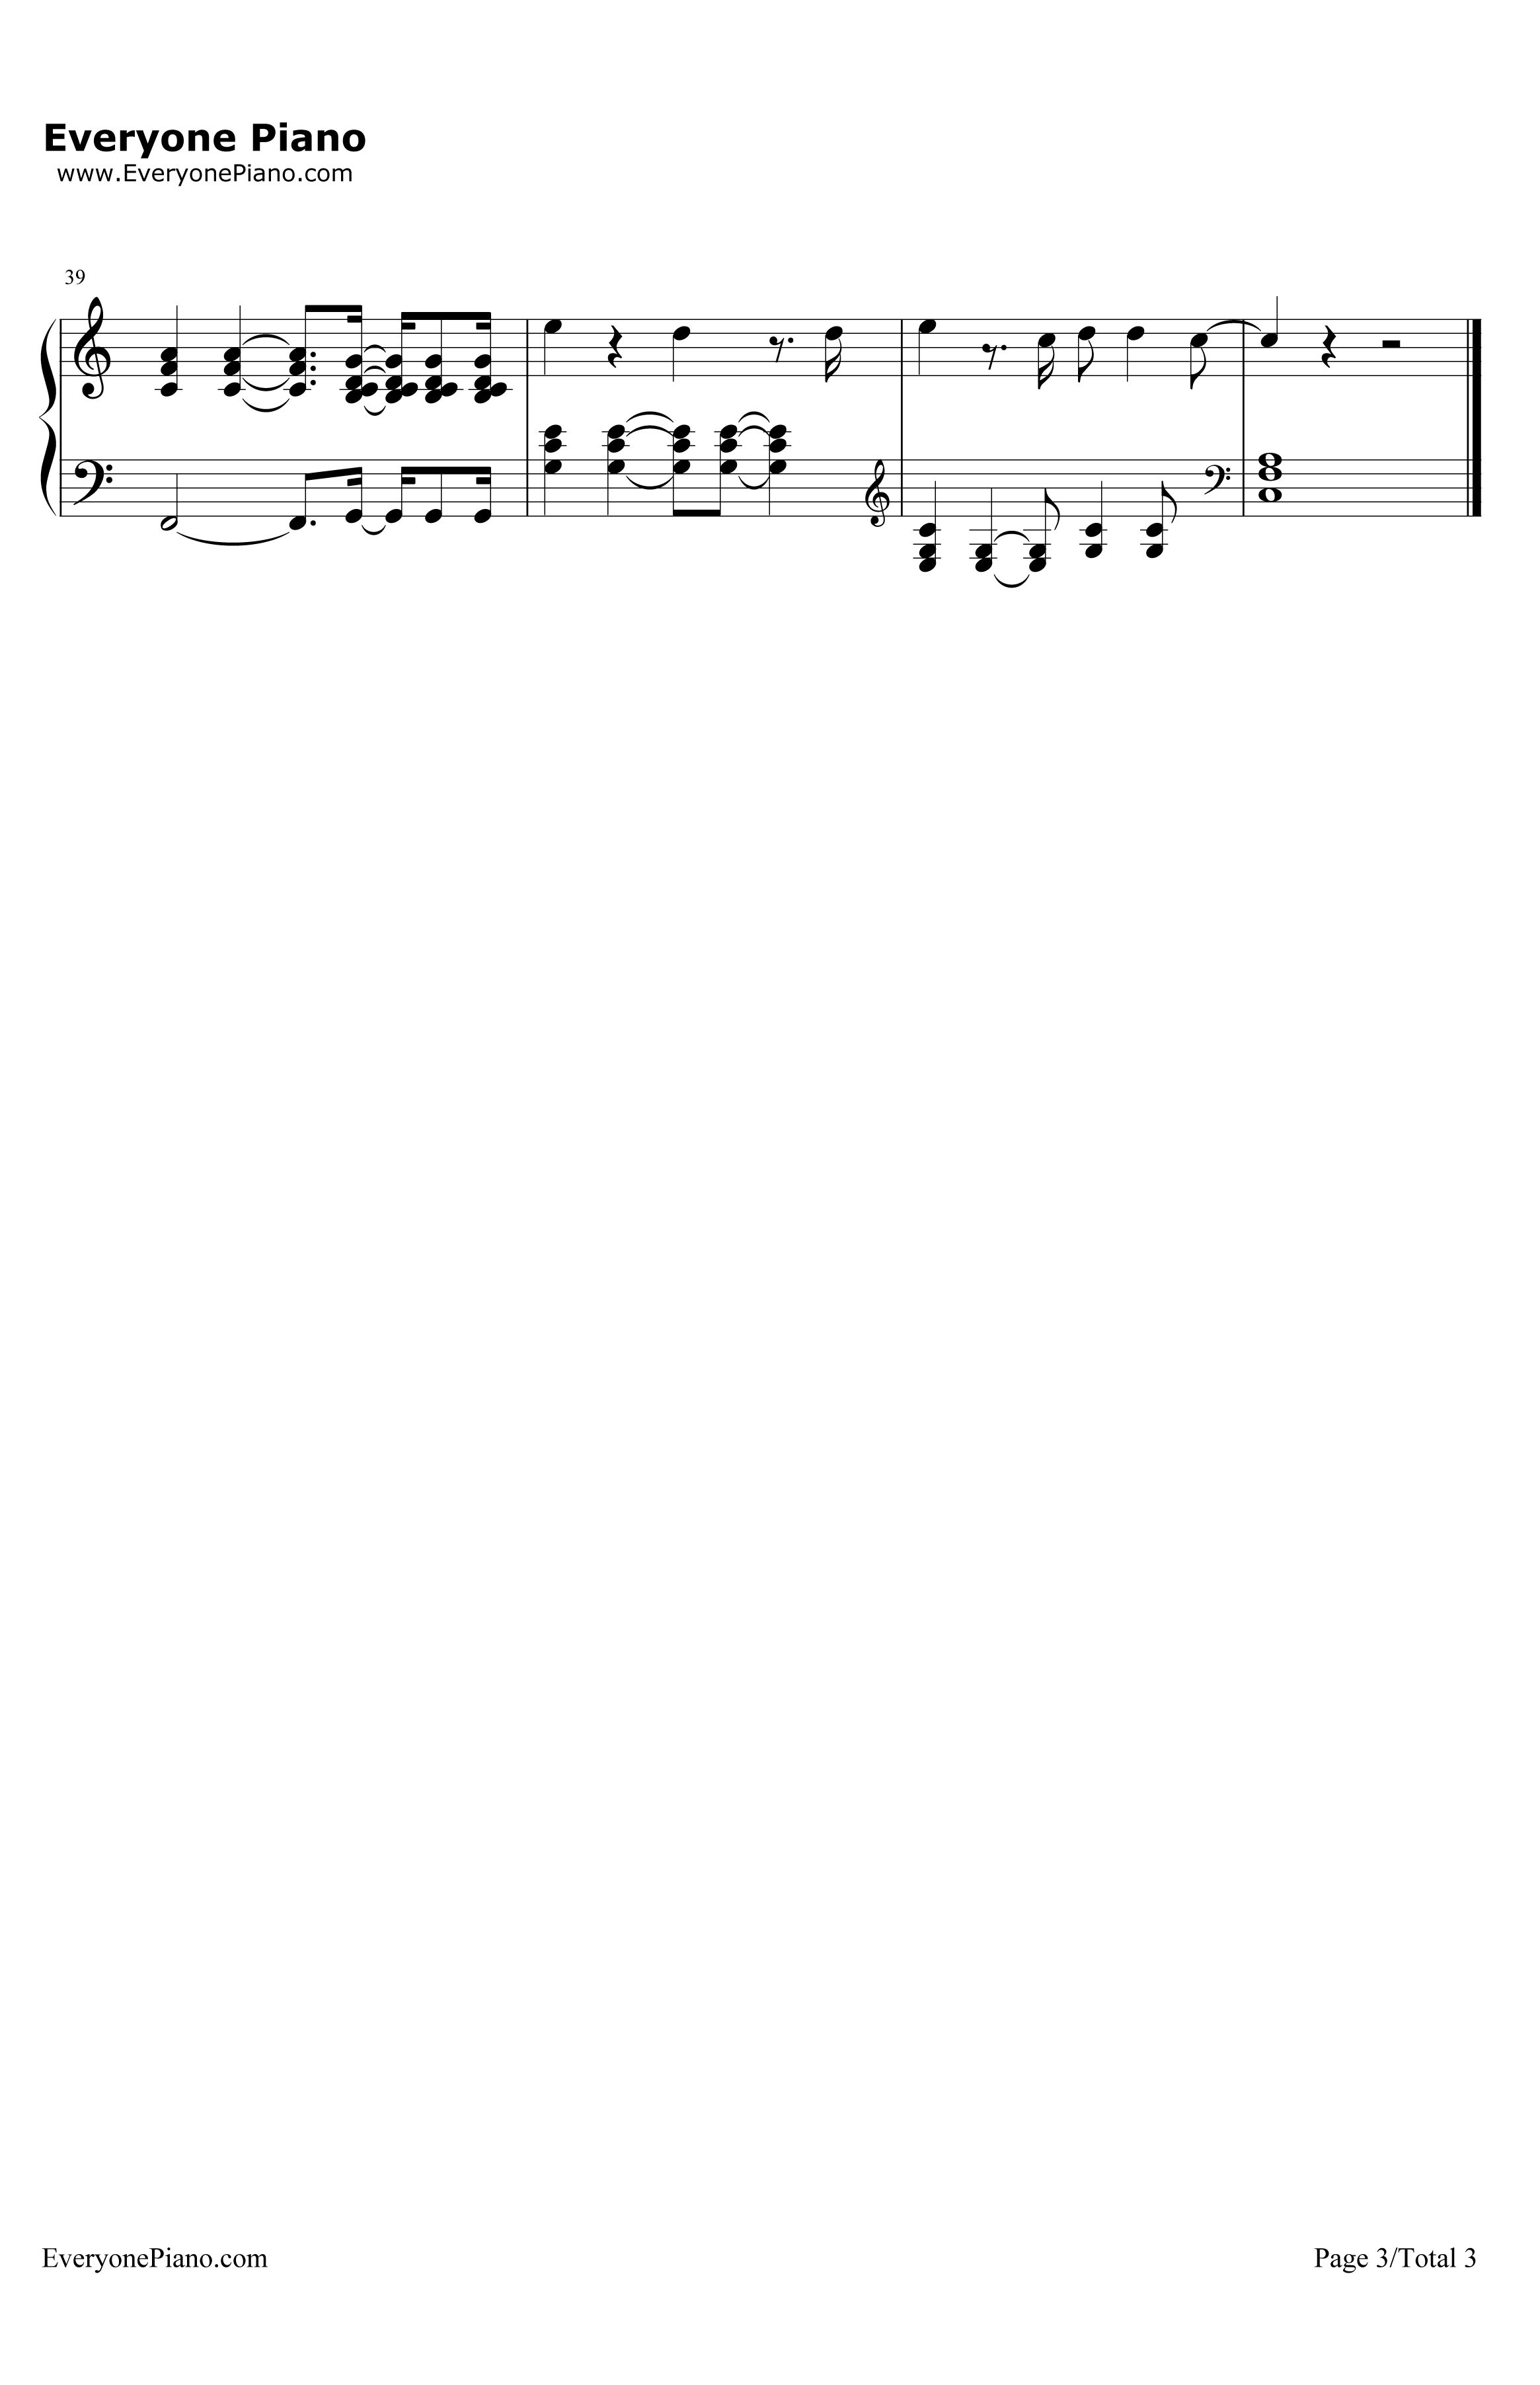 This钢琴谱-EdSheeran3